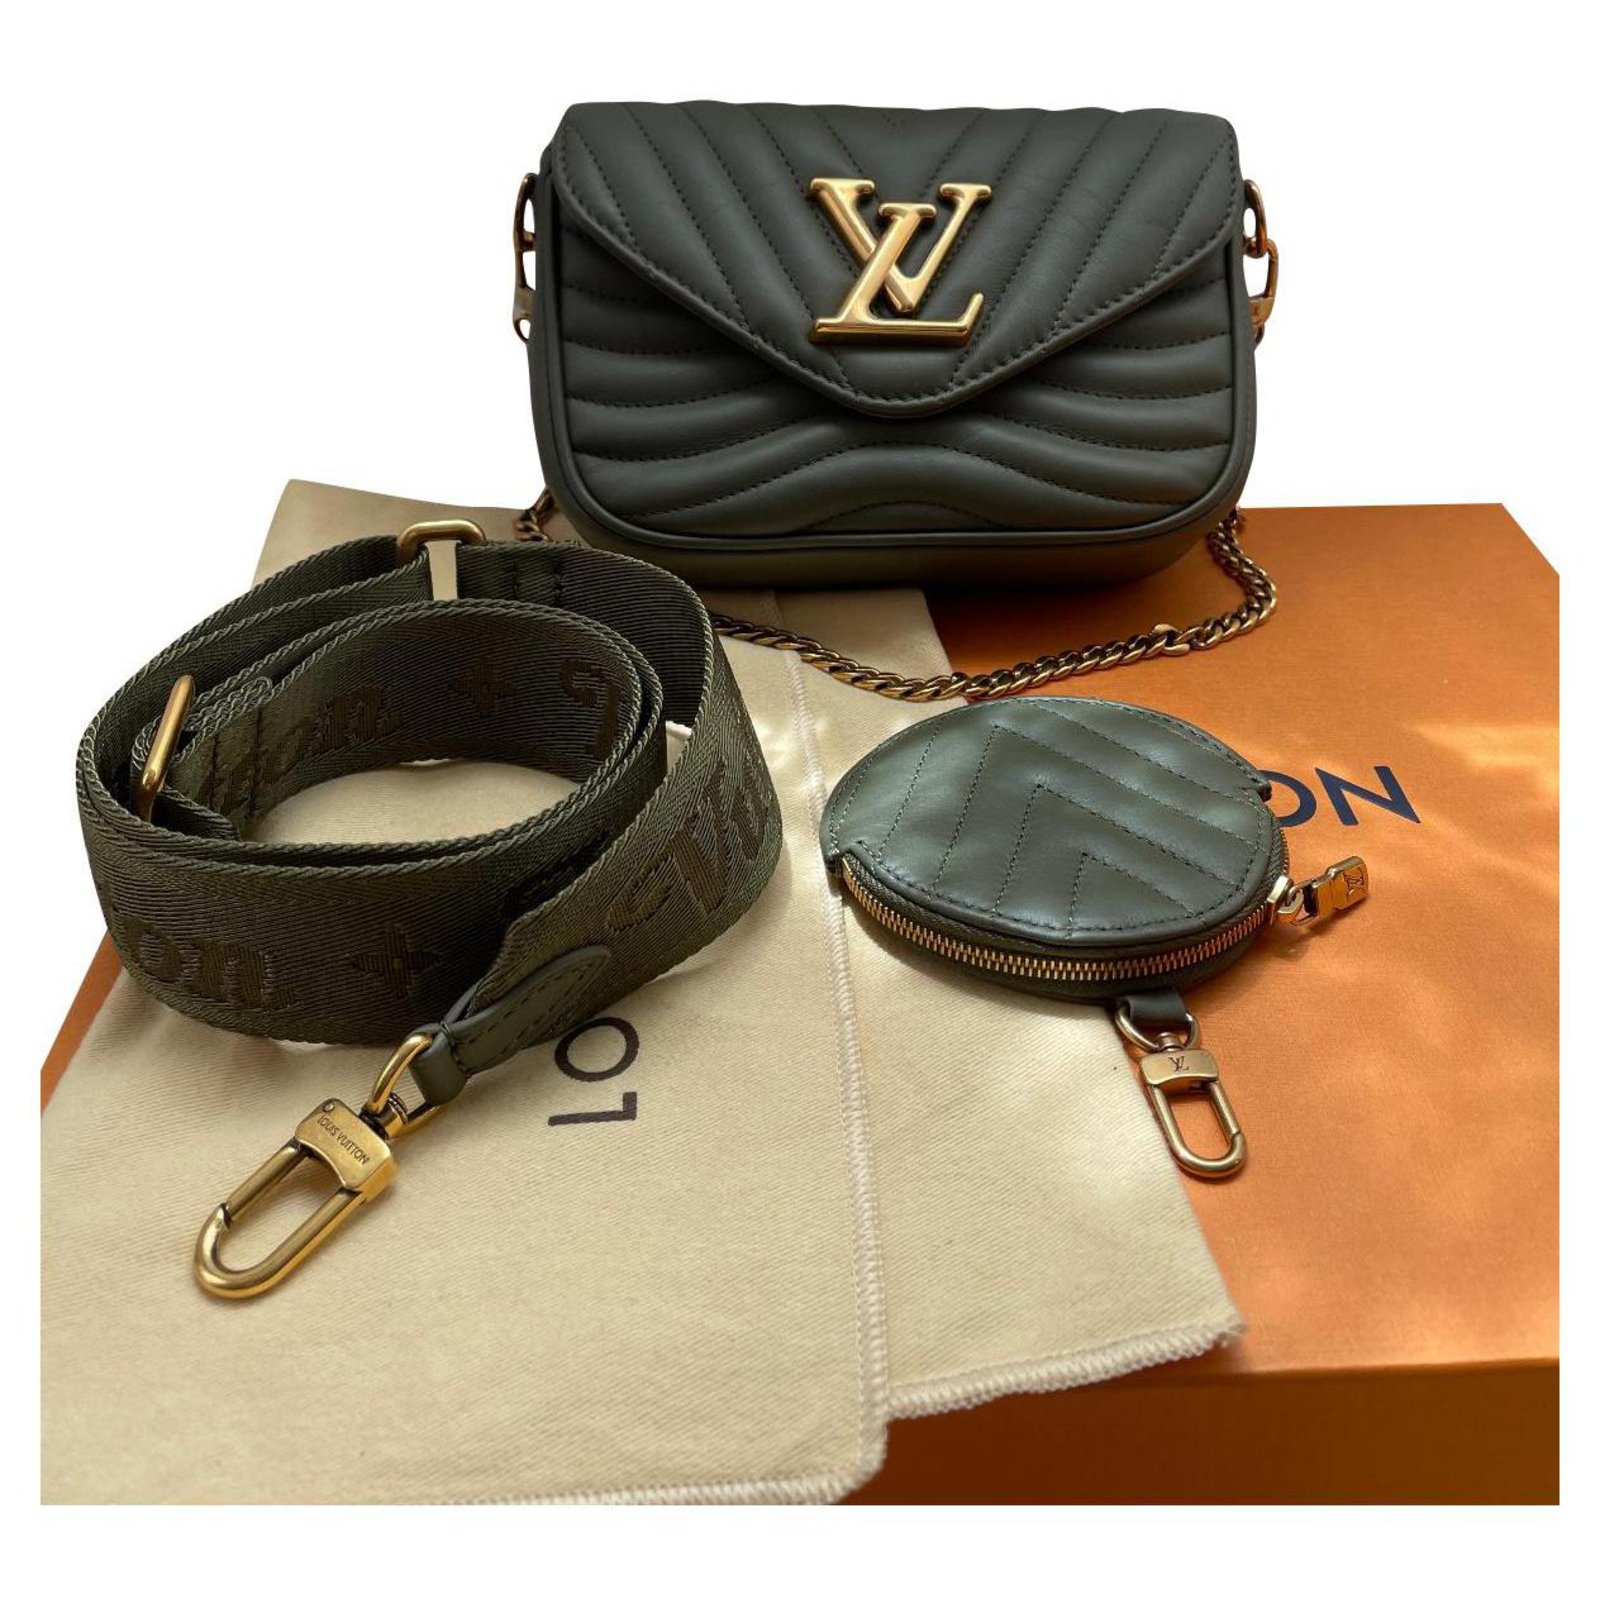 El Multi Pochette de Louis Vuitton: el nuevo bolso del otoño